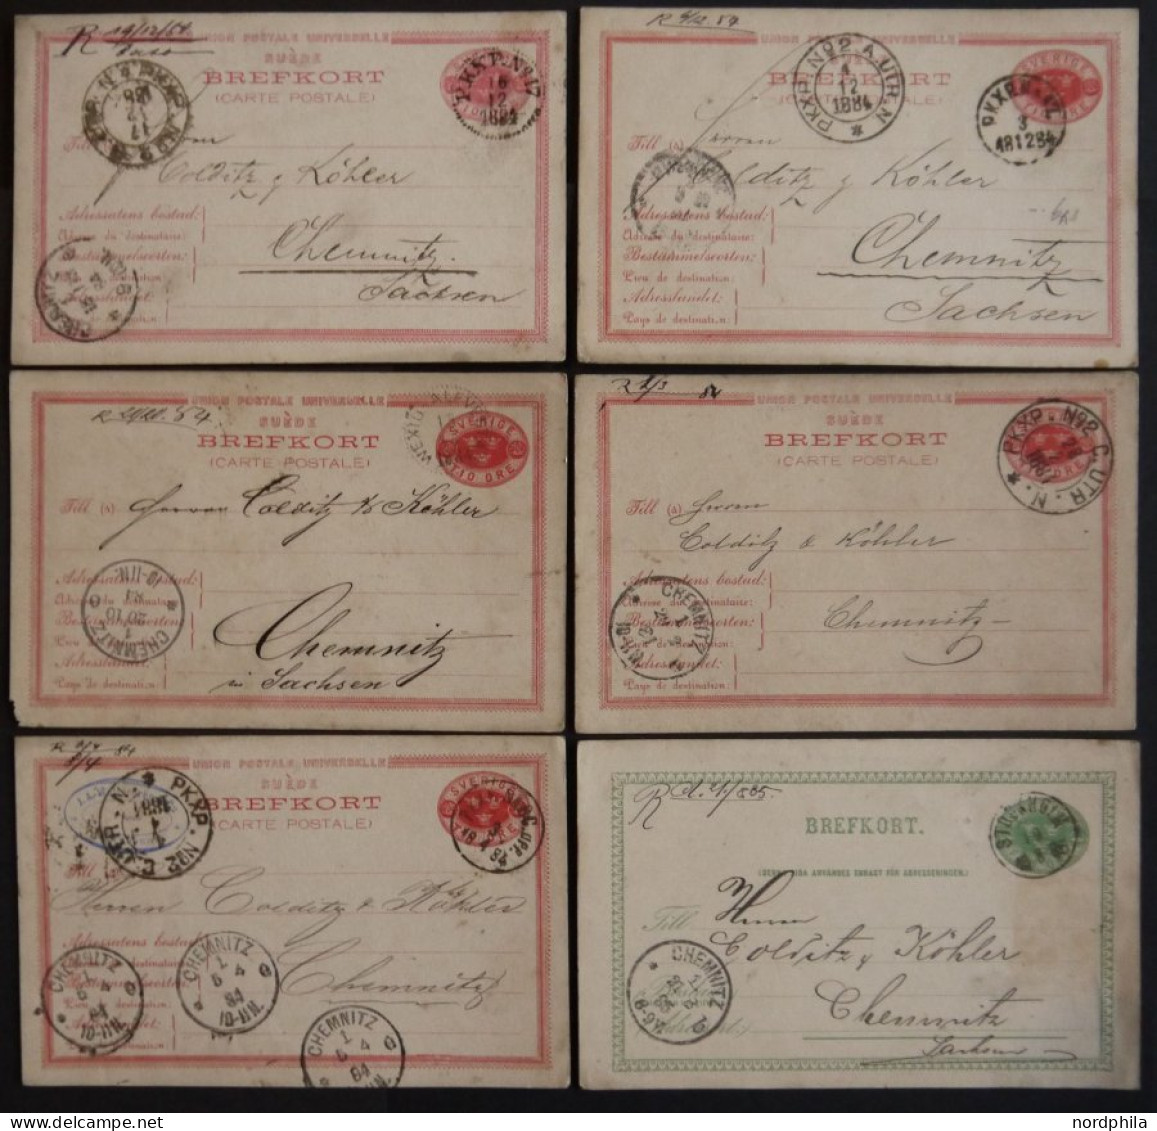 GANZSACHEN 1883-98, über 40 Ganzsachenkarten Nach Deutschland, Einige Interessante Stempel, Feinst/Pracht - Postwaardestukken